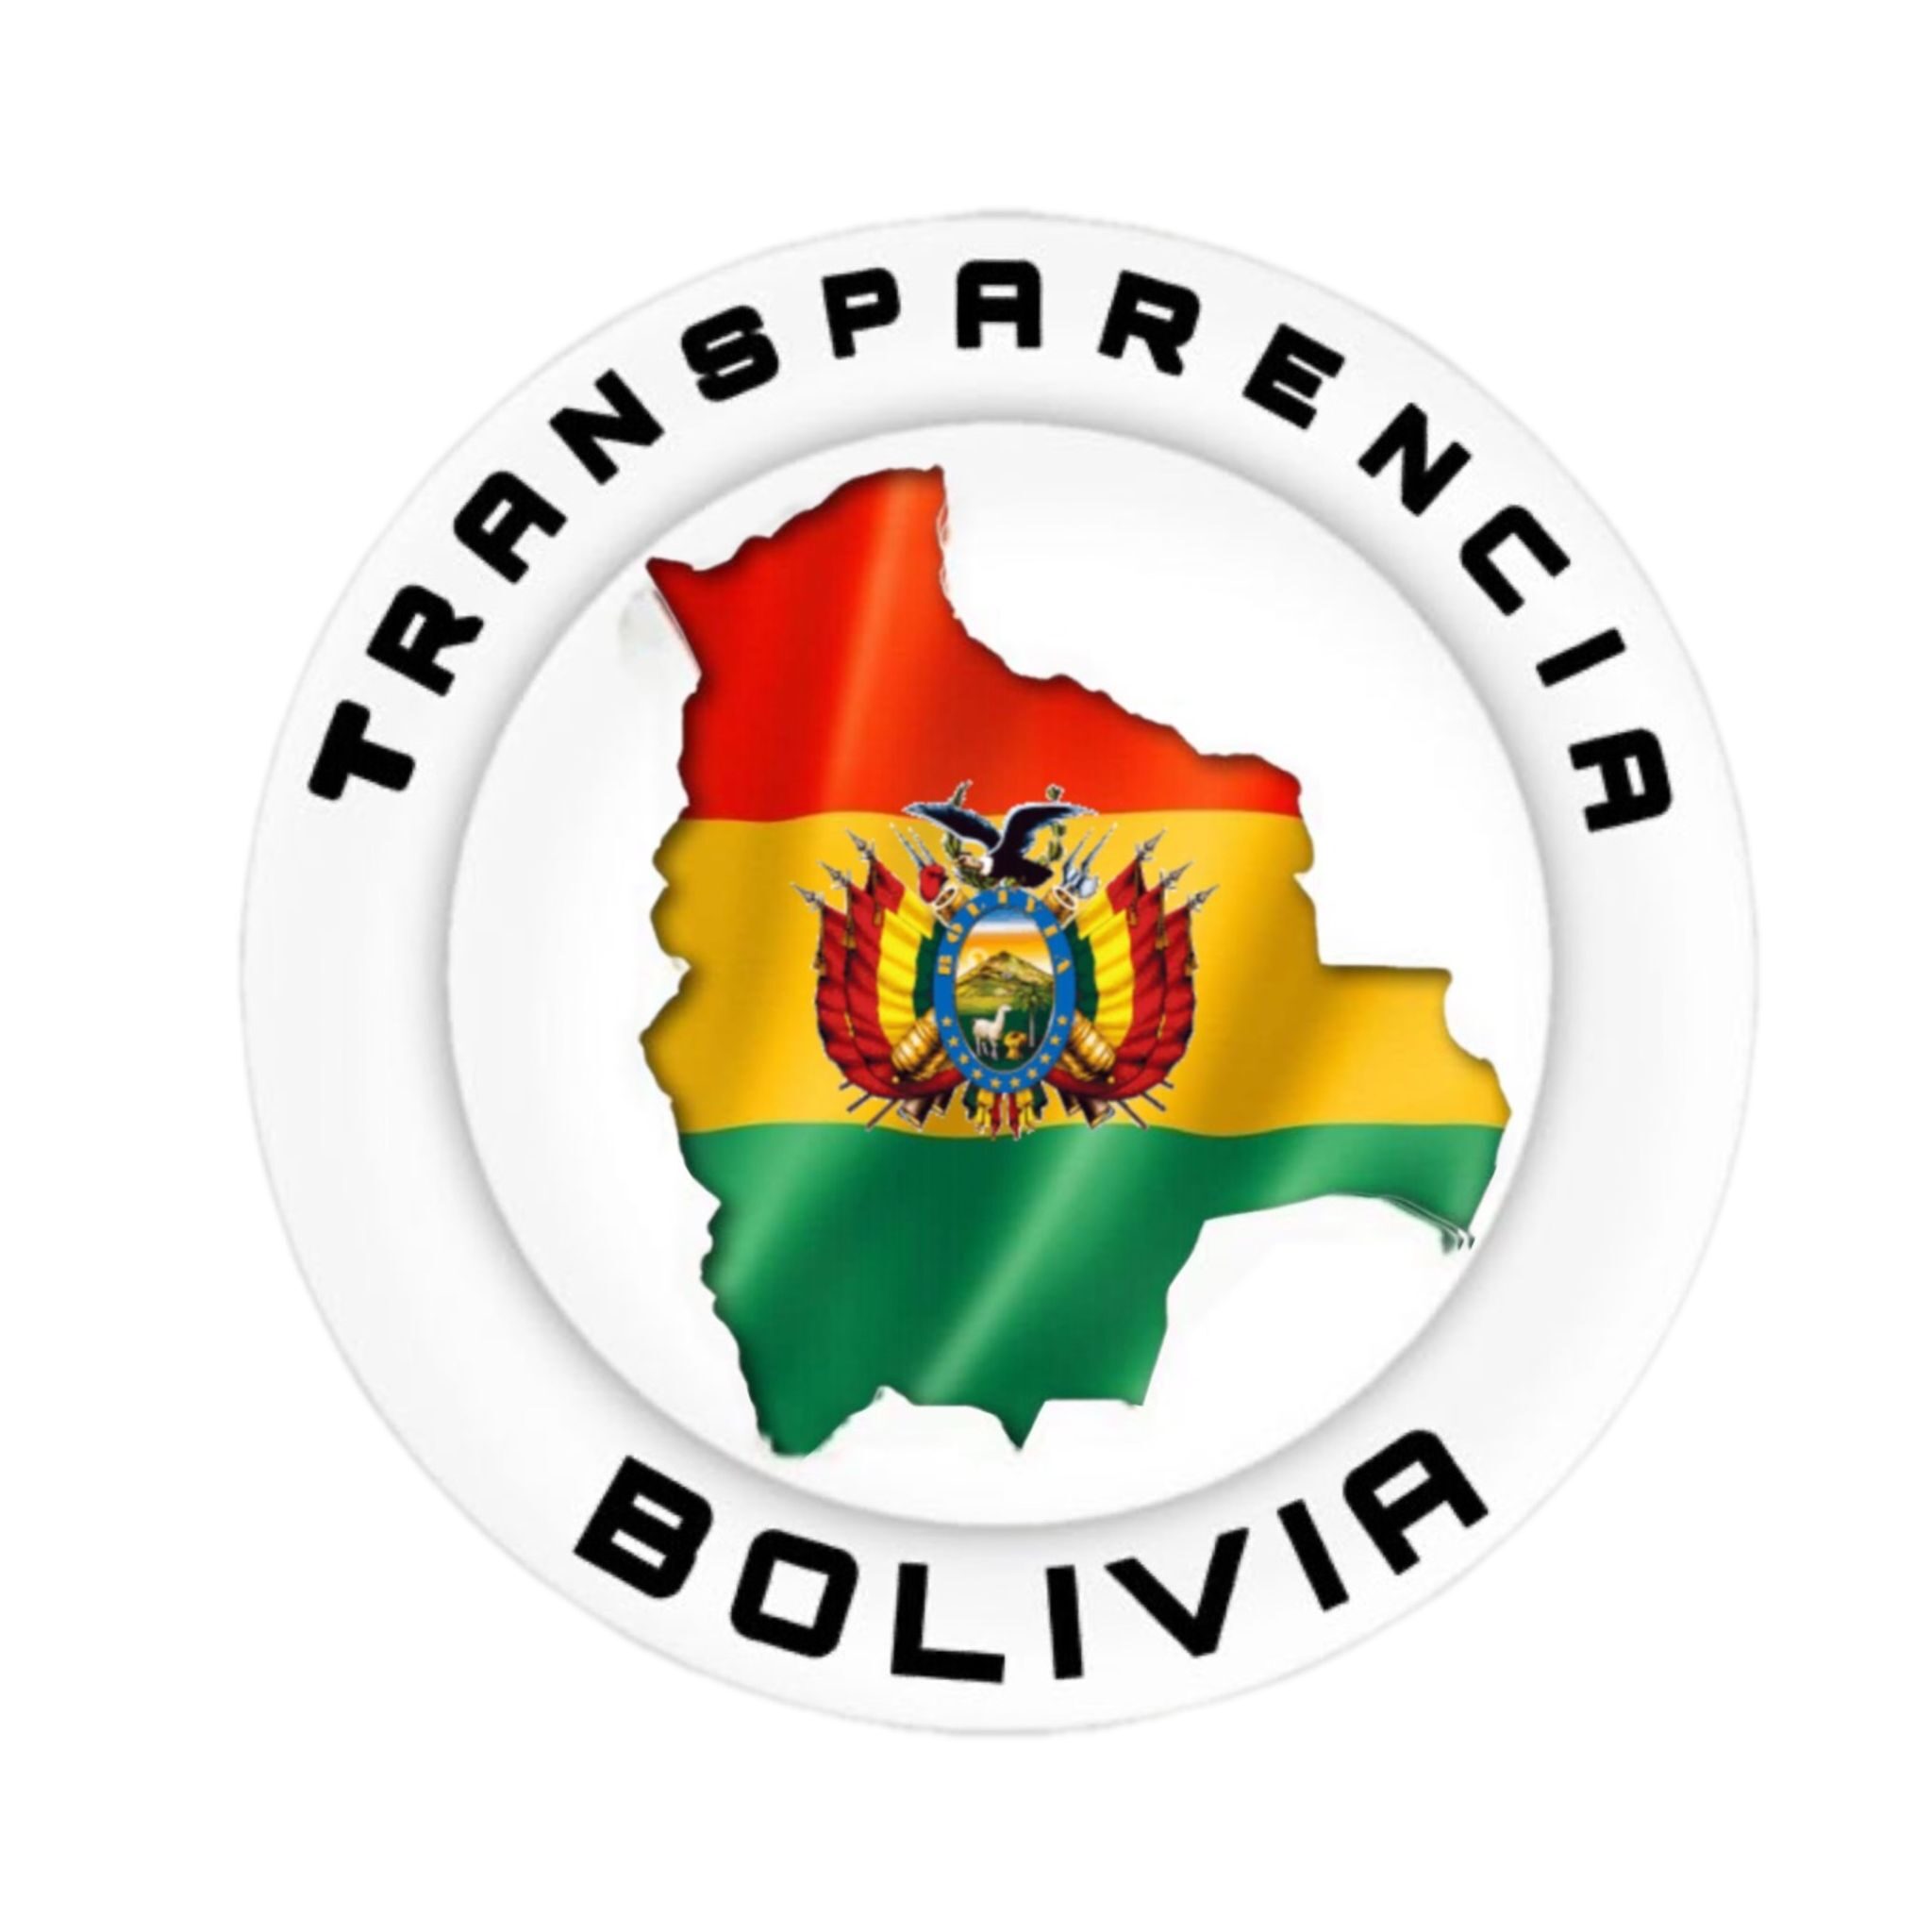 Transparencia Bolivia - Organización civil de ciudadanos que luchan contra la corrupción política e institucional por una Bolivia transparente.